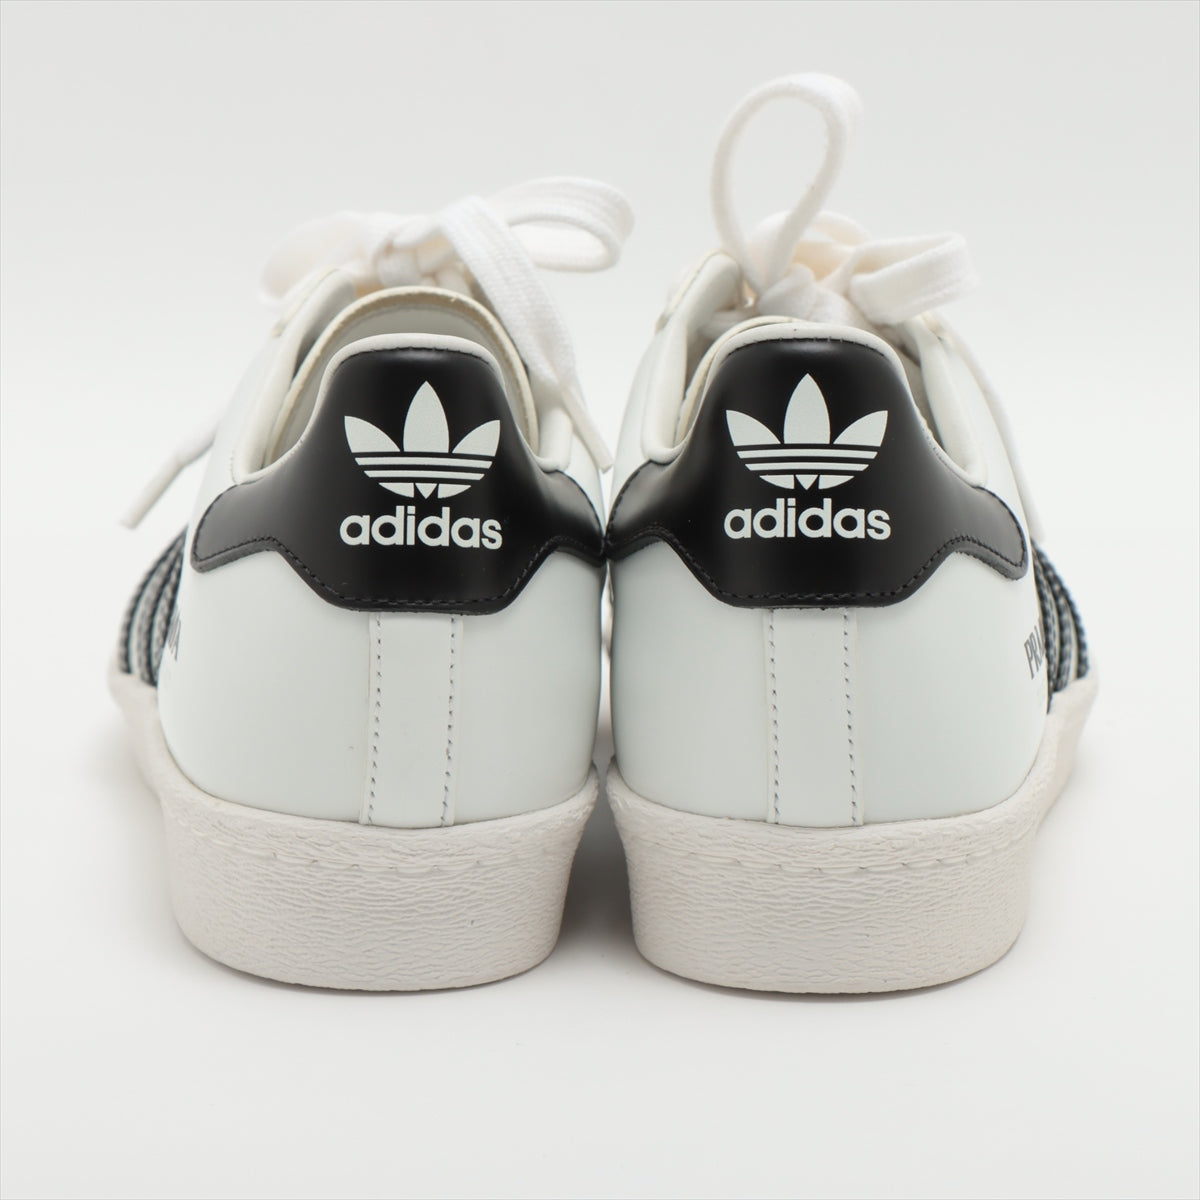 Prada x Adidas Leather Sneakers 24㎝ Ladies' Black × White 2EG321